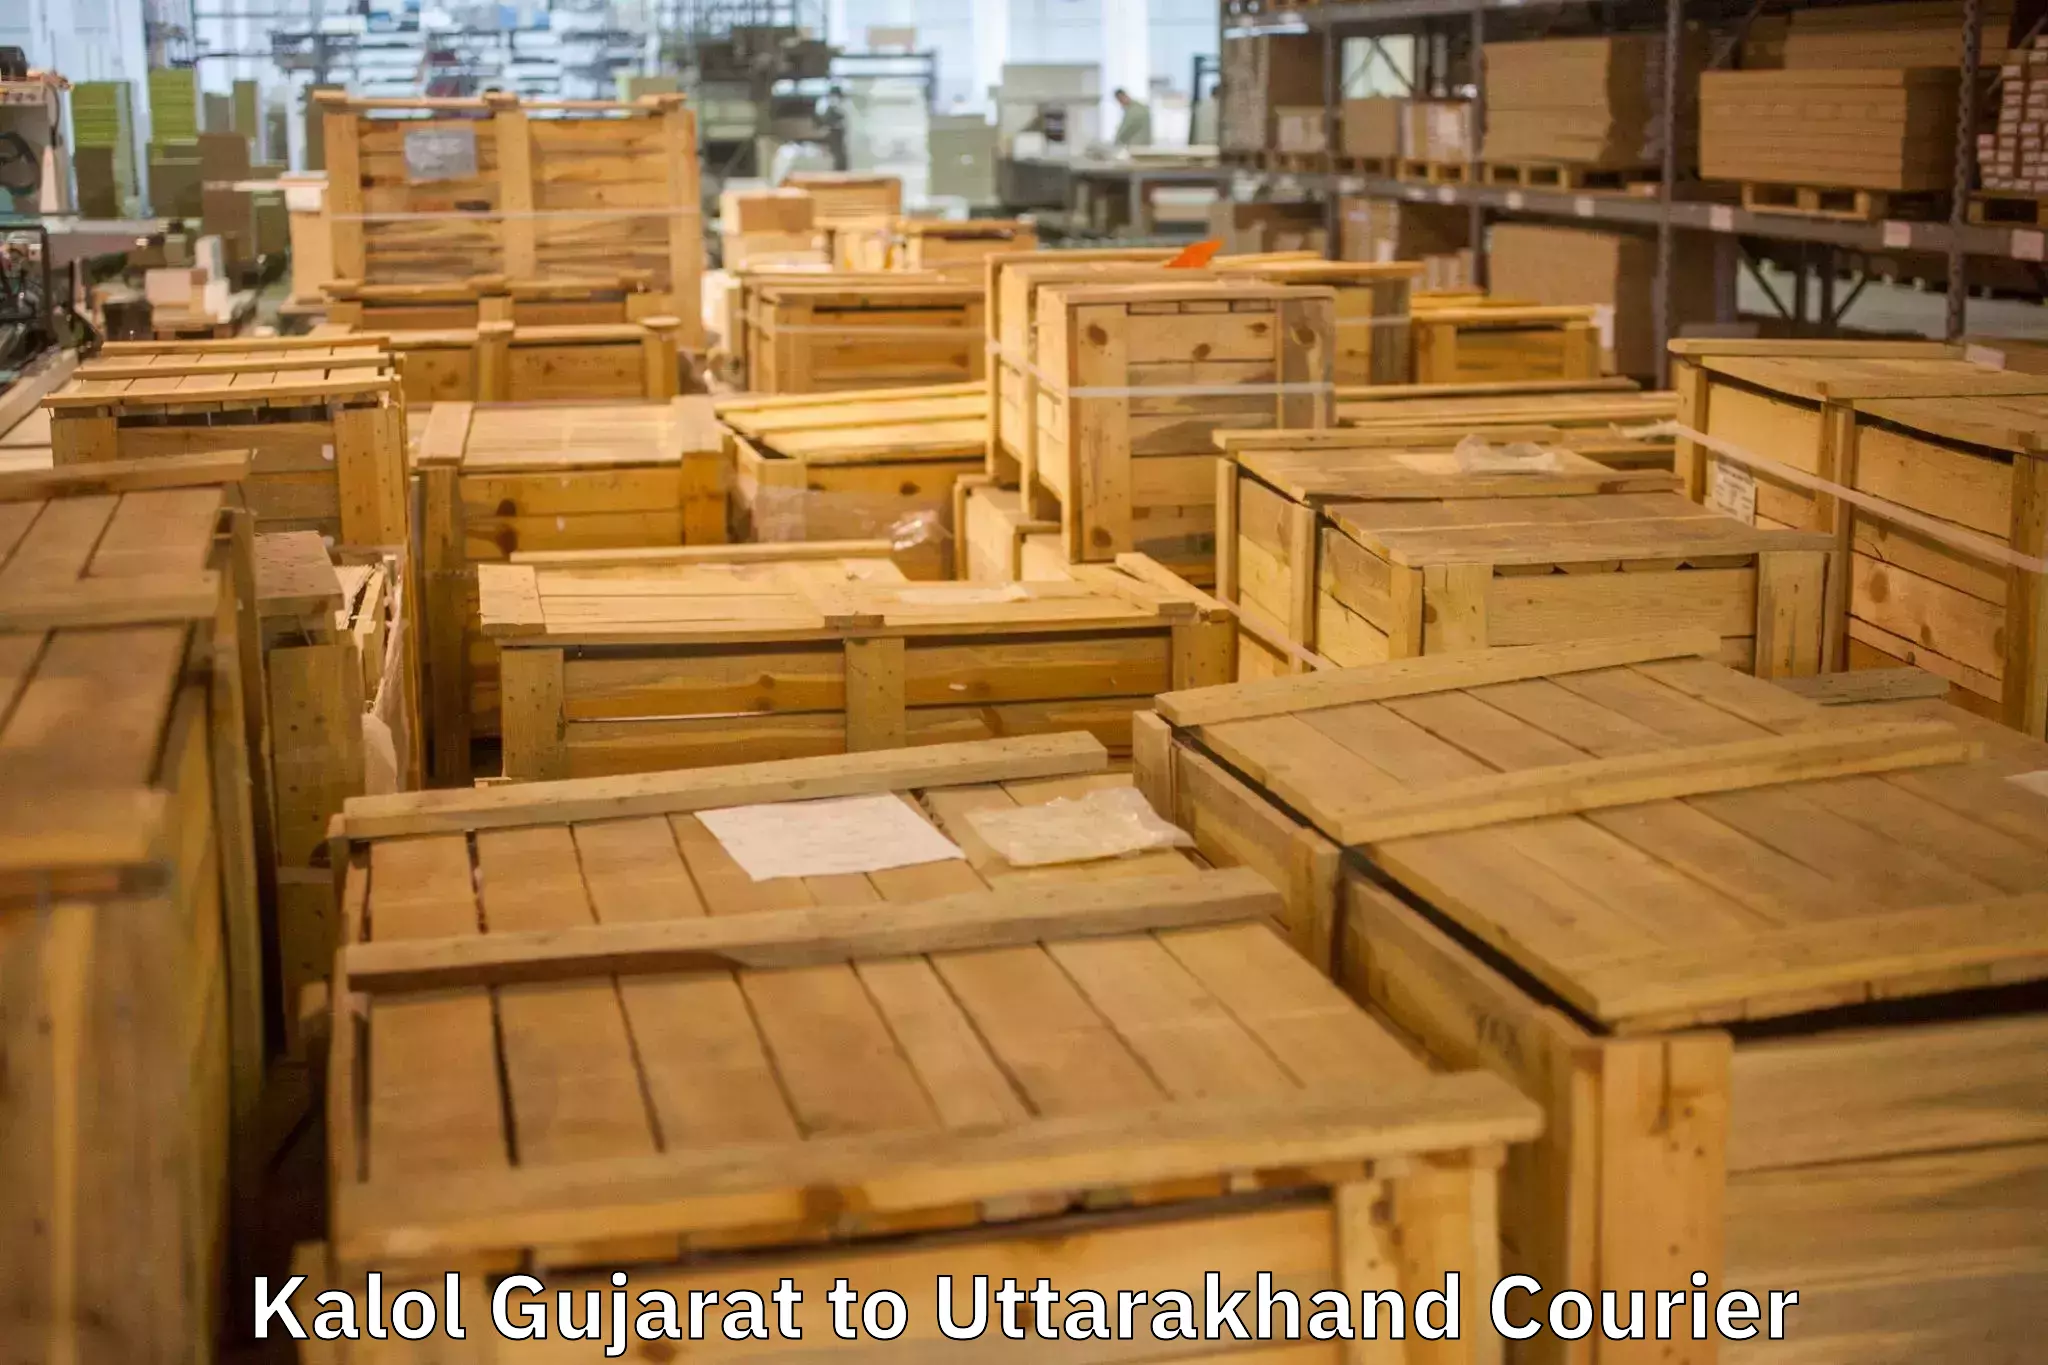 Furniture moving experts Kalol Gujarat to Almora